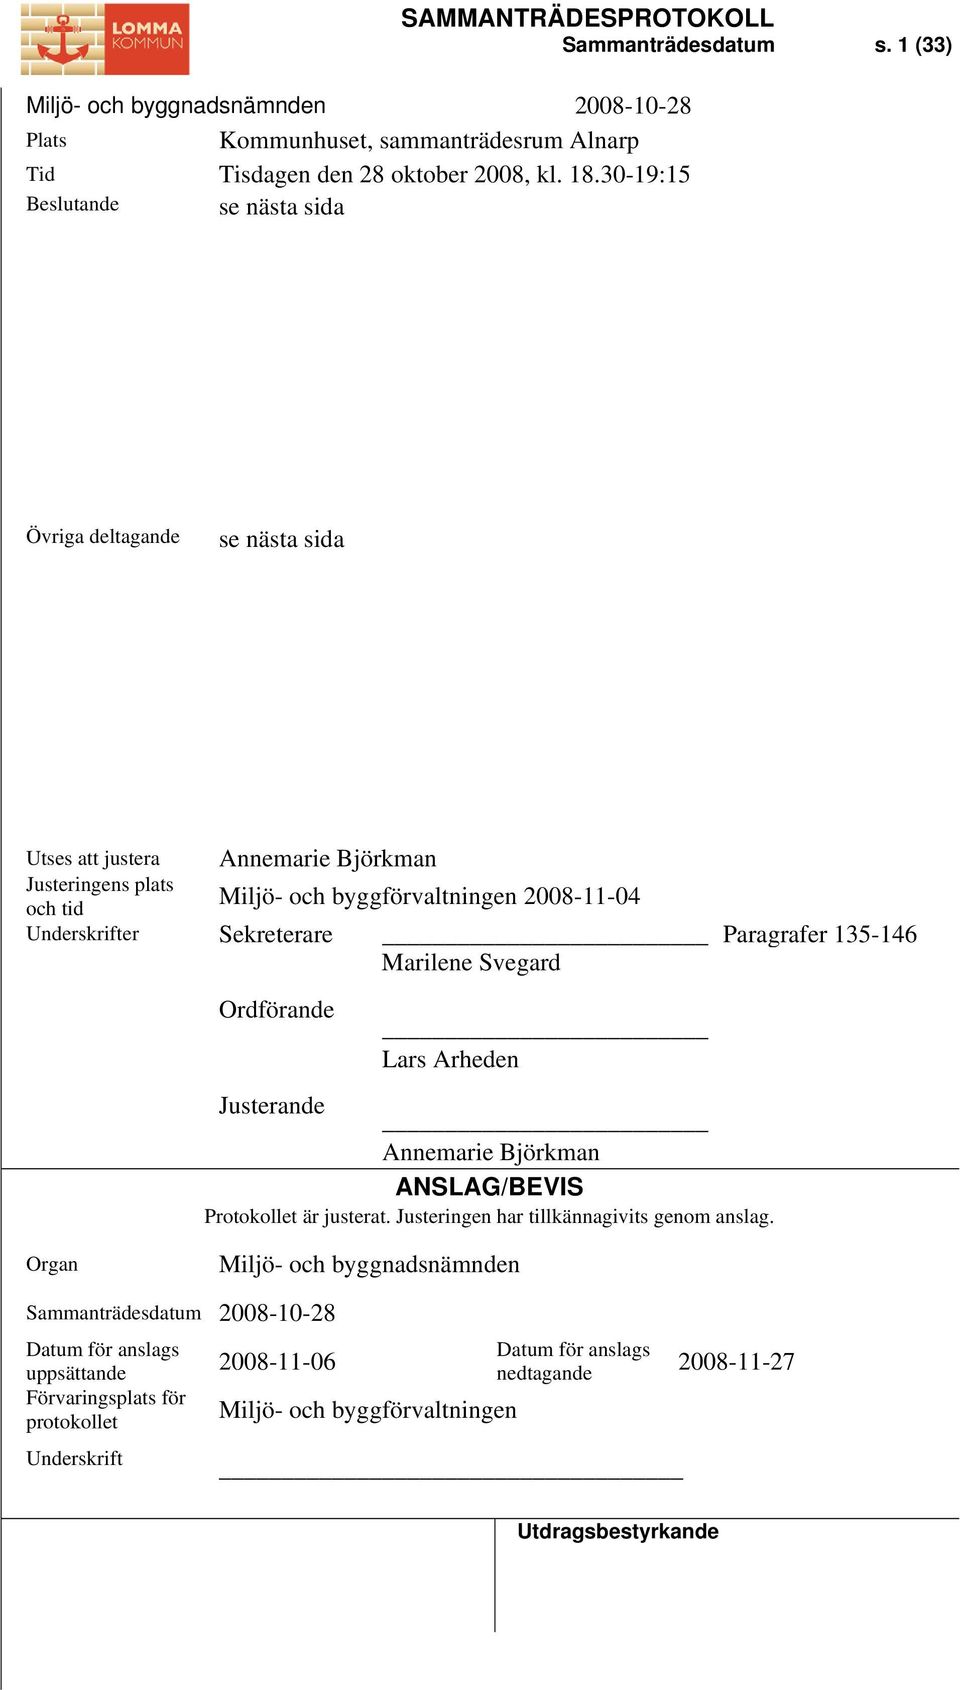 Underskrifter Sekreterare Paragrafer 135-146 Marilene Svegard Ordförande Lars Arheden Justerande Annemarie Björkman ANSLAG/BEVIS Protokollet är justerat.